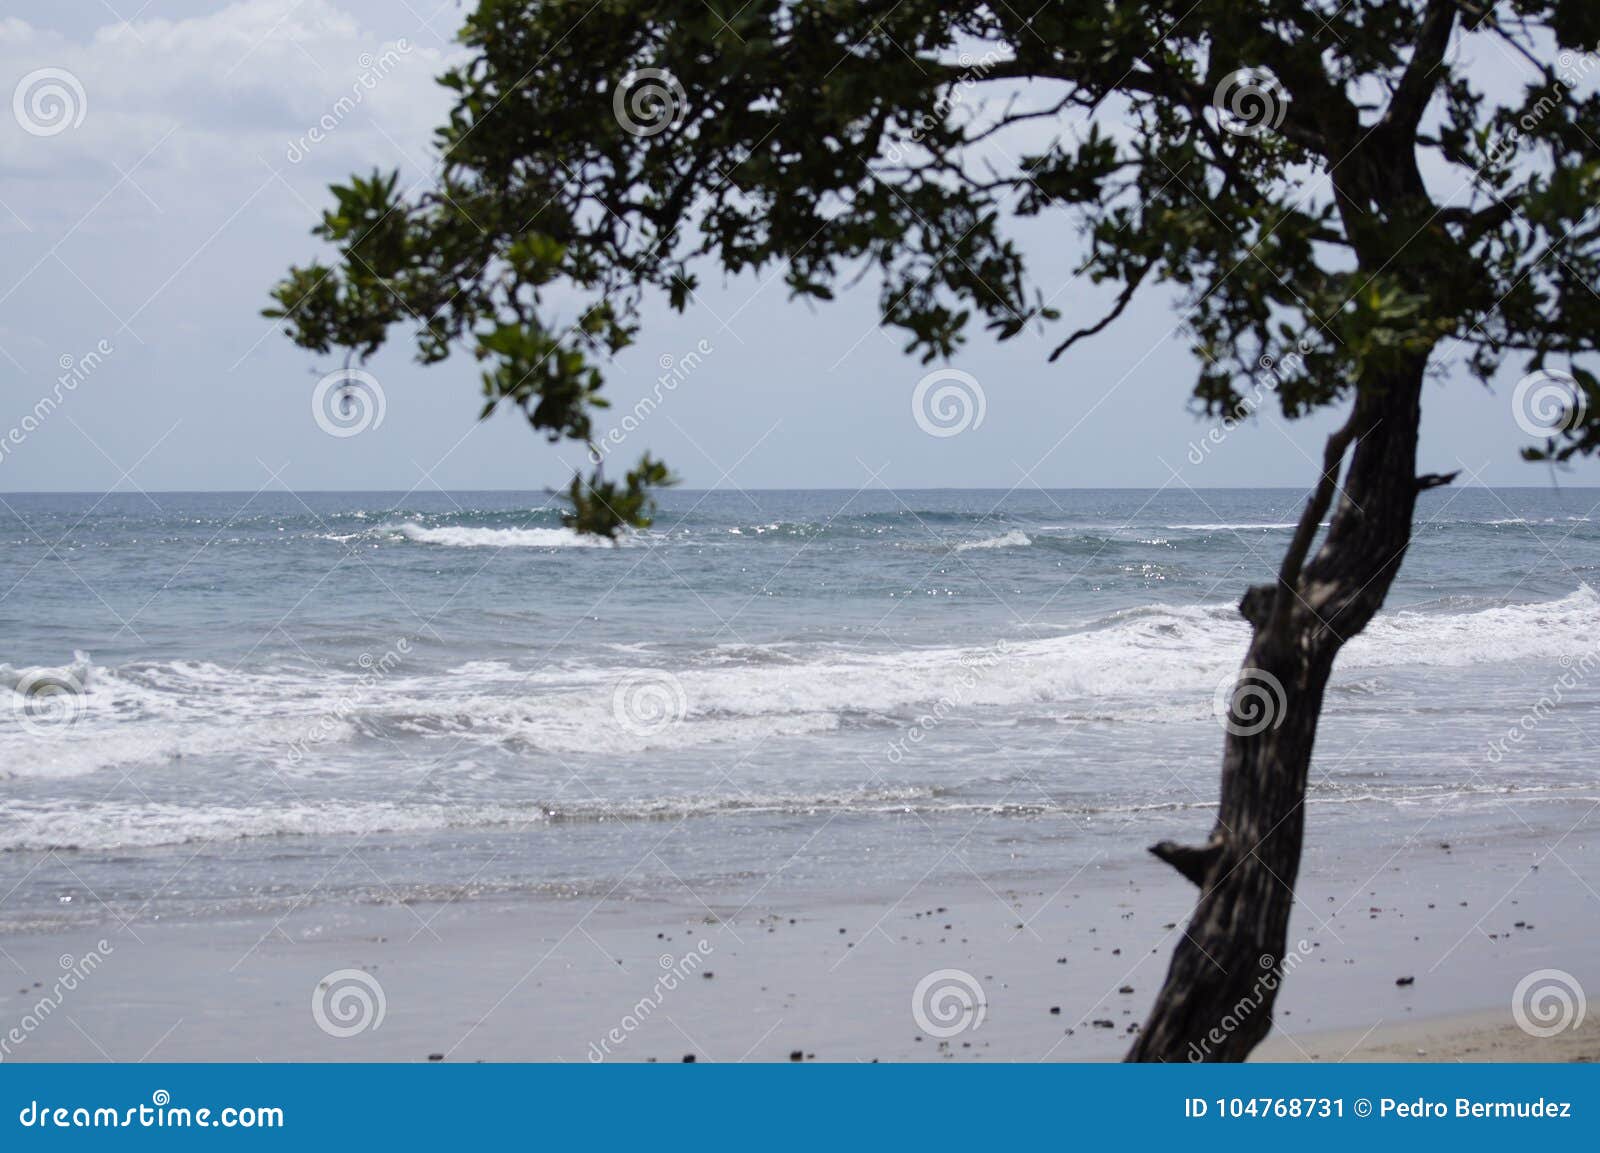 beach nosara in guanacaste costa rica